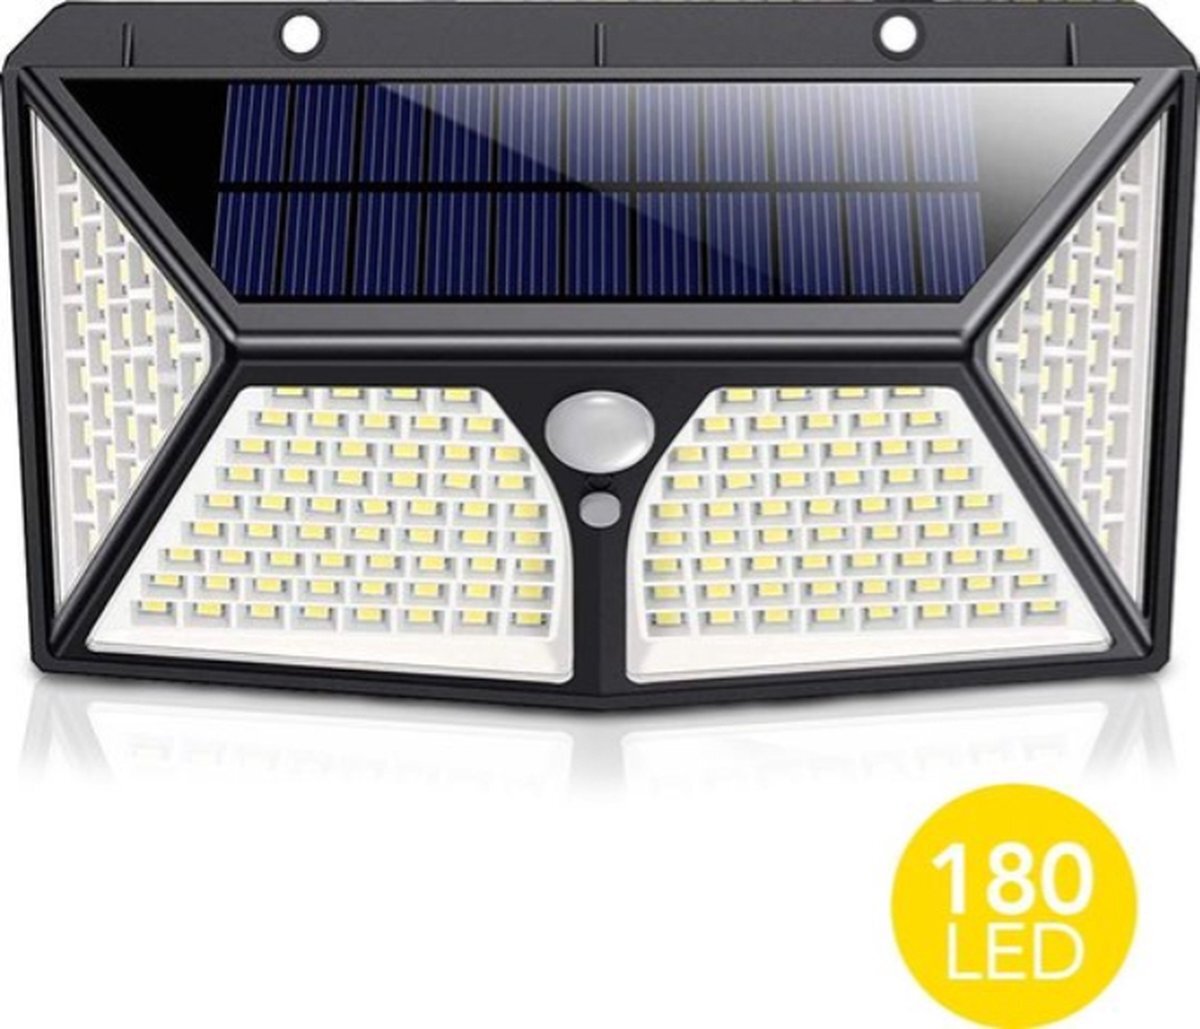 Lichtendirect Solar LED Lamp - 180LED Verlichting - Verlichting op Zonne-energie - IP65 Waterdicht | Buitenverlichting - Buitenlamp op solar verlichting - Bewegingssensor & Nachtsensor - Tuinlamp